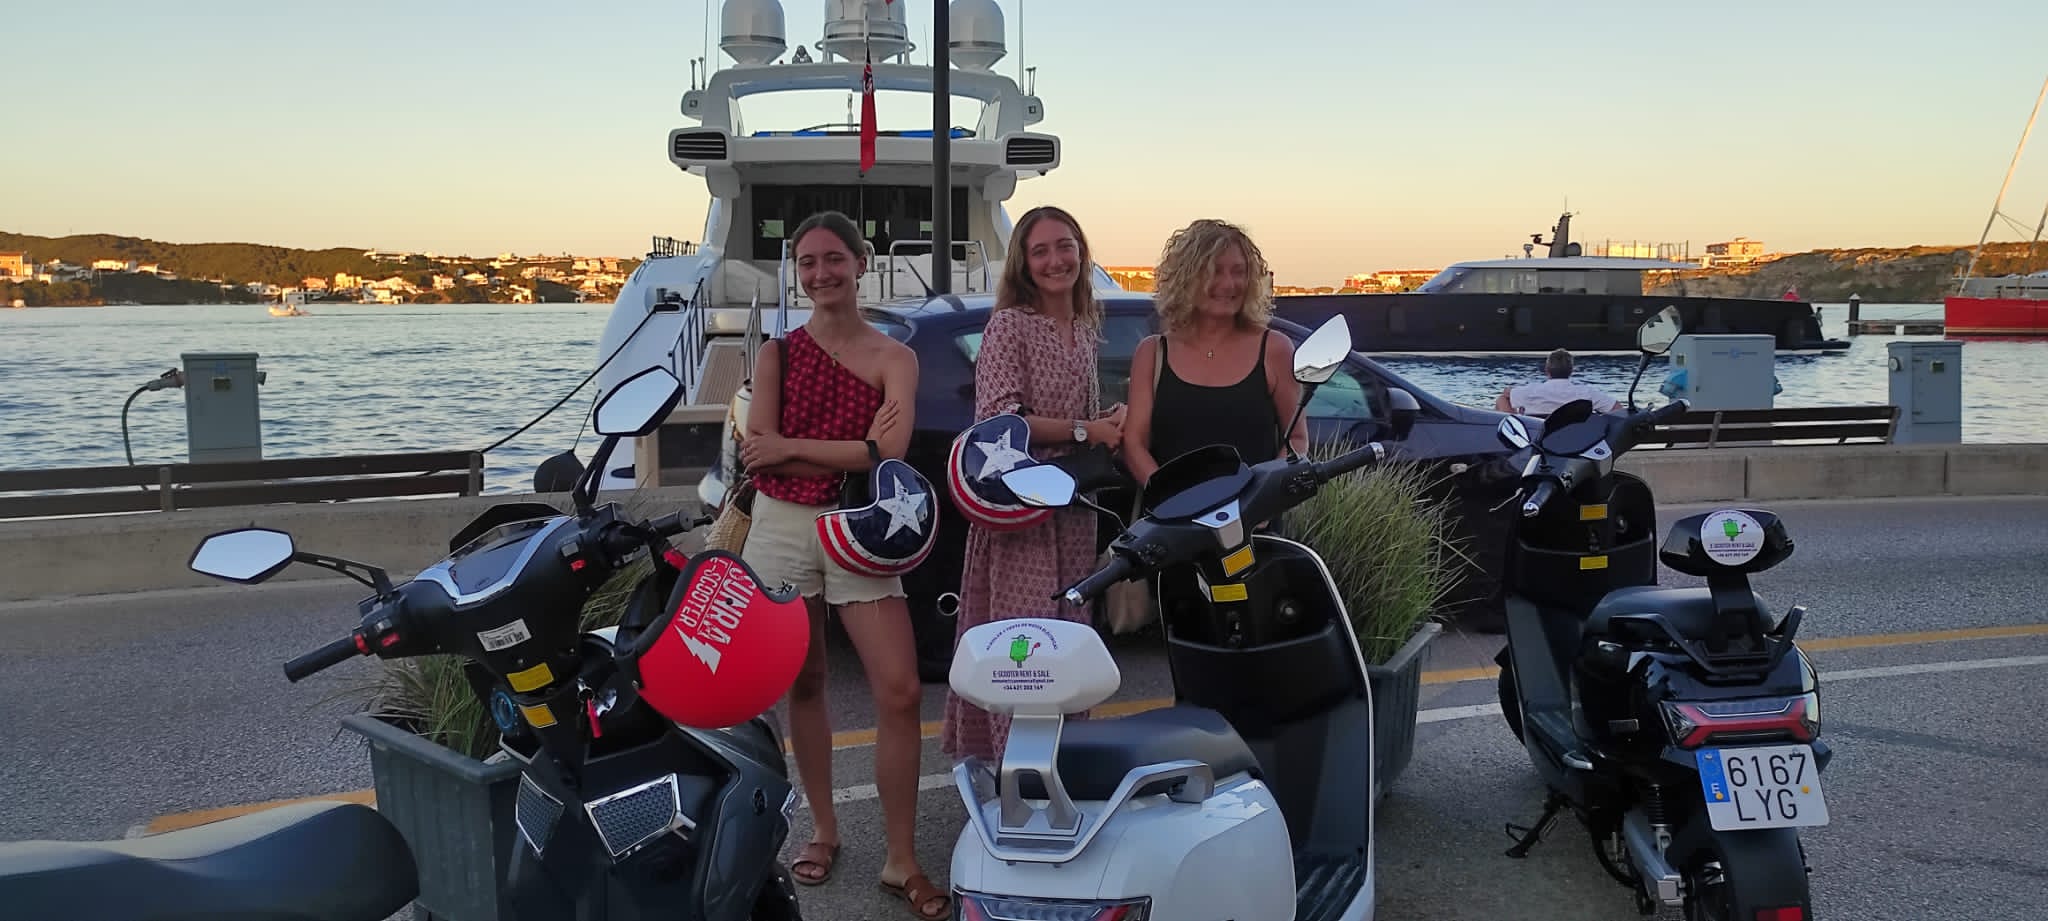 Motorcycle rental Menorca